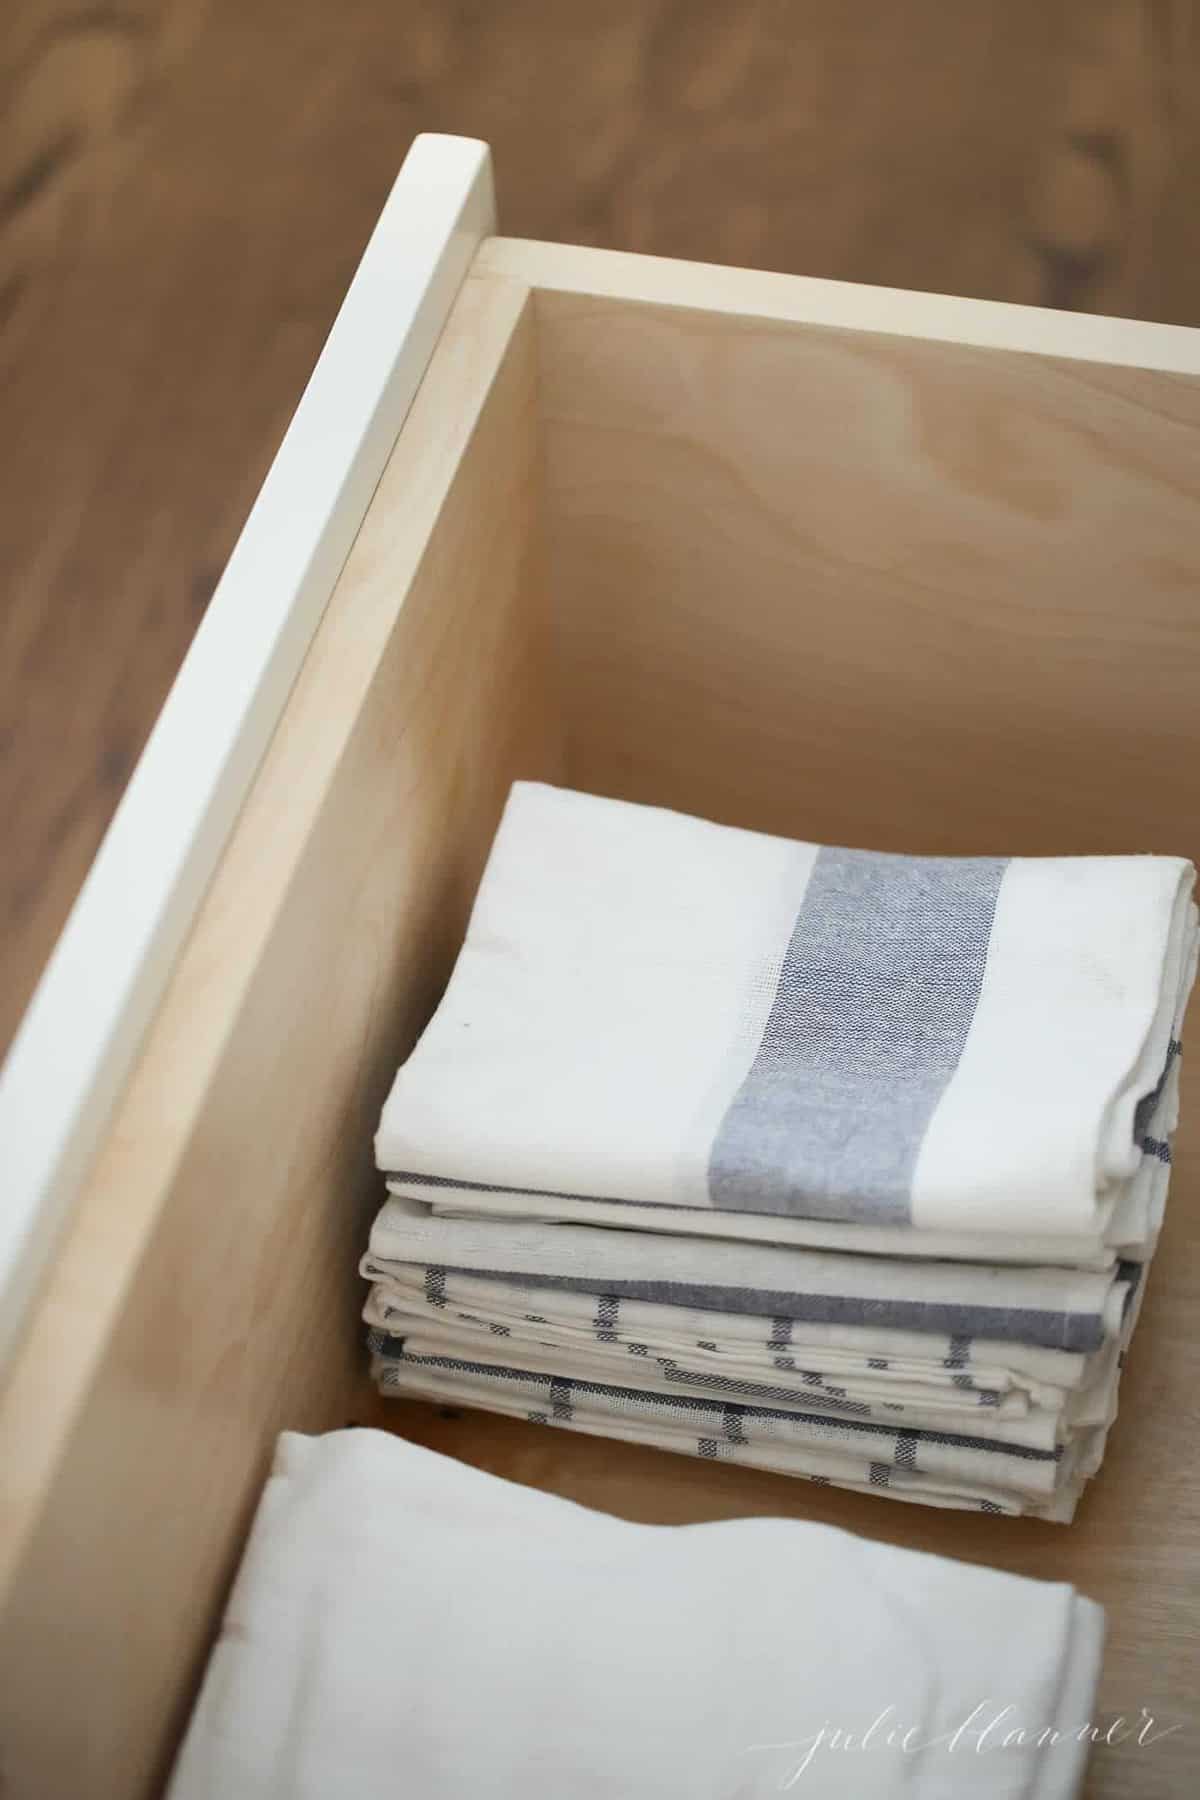 抽屉里放着蓝白条纹的简易厨房毛巾。